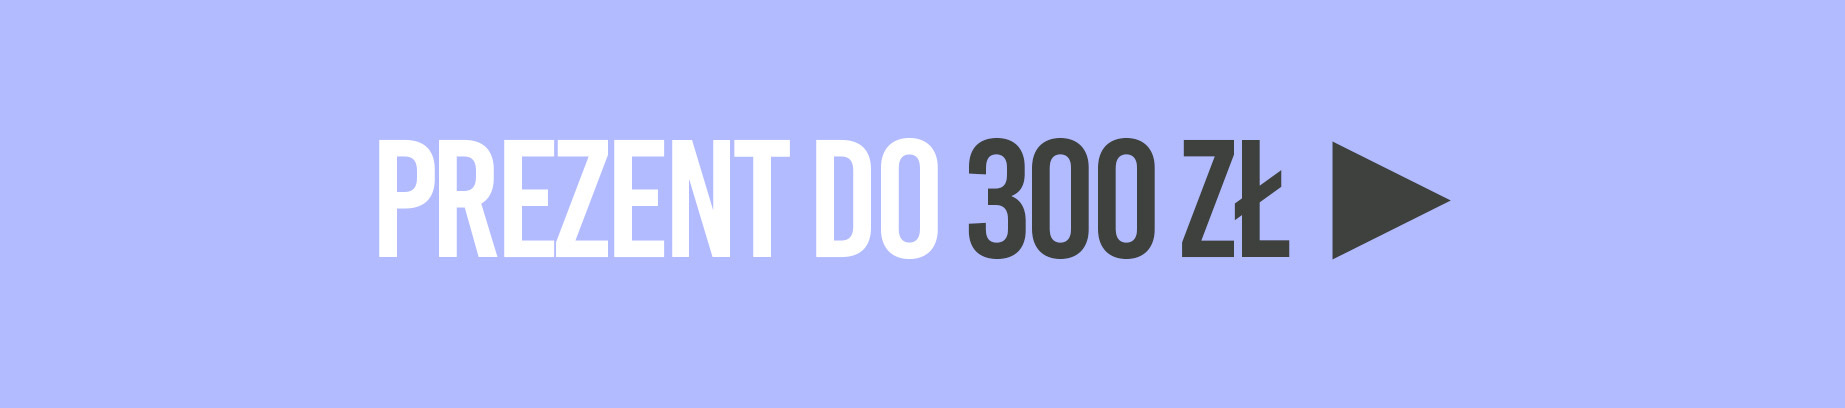 DO 300